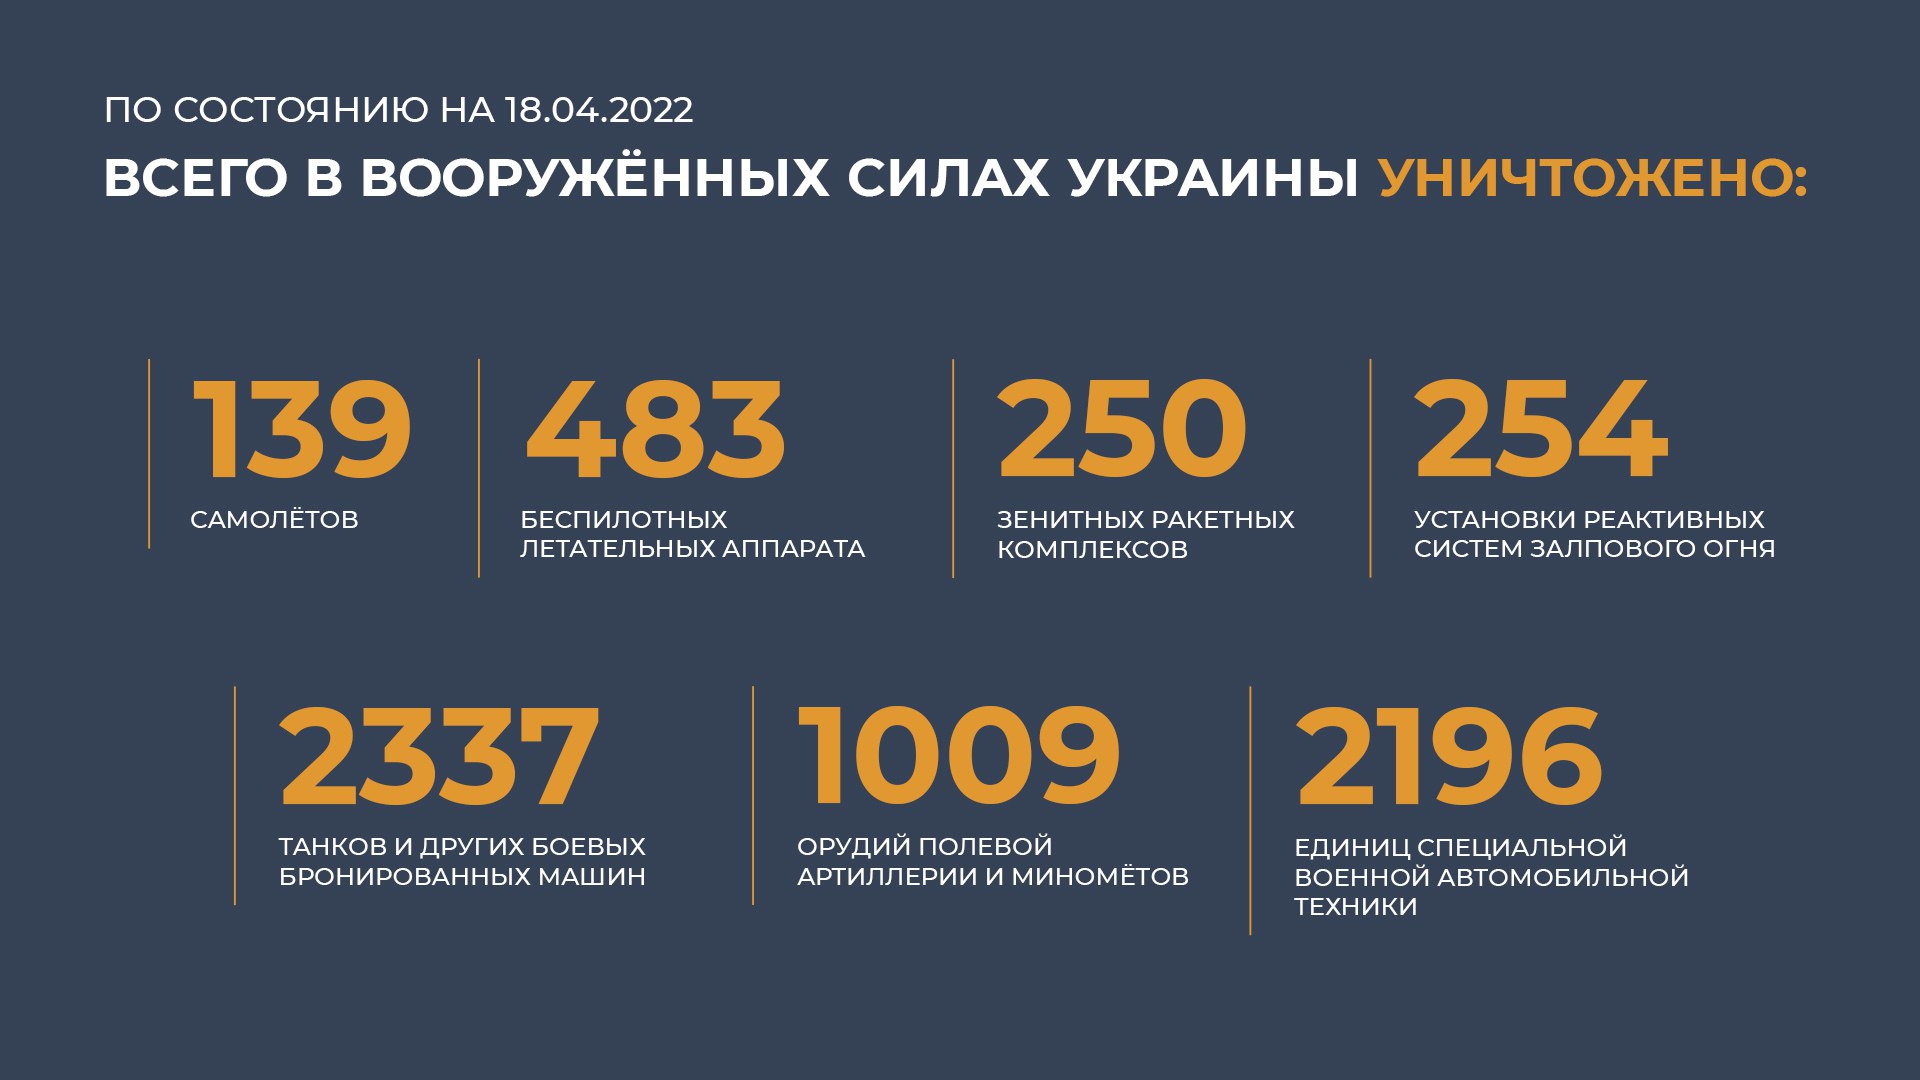 Сво статистика потерь. Потери ВСУ на Украине 2022 на сегодня таблица. Потери ВСУ инфографика. Потери военных РФ на Украине 2022. Статистика потерь России.